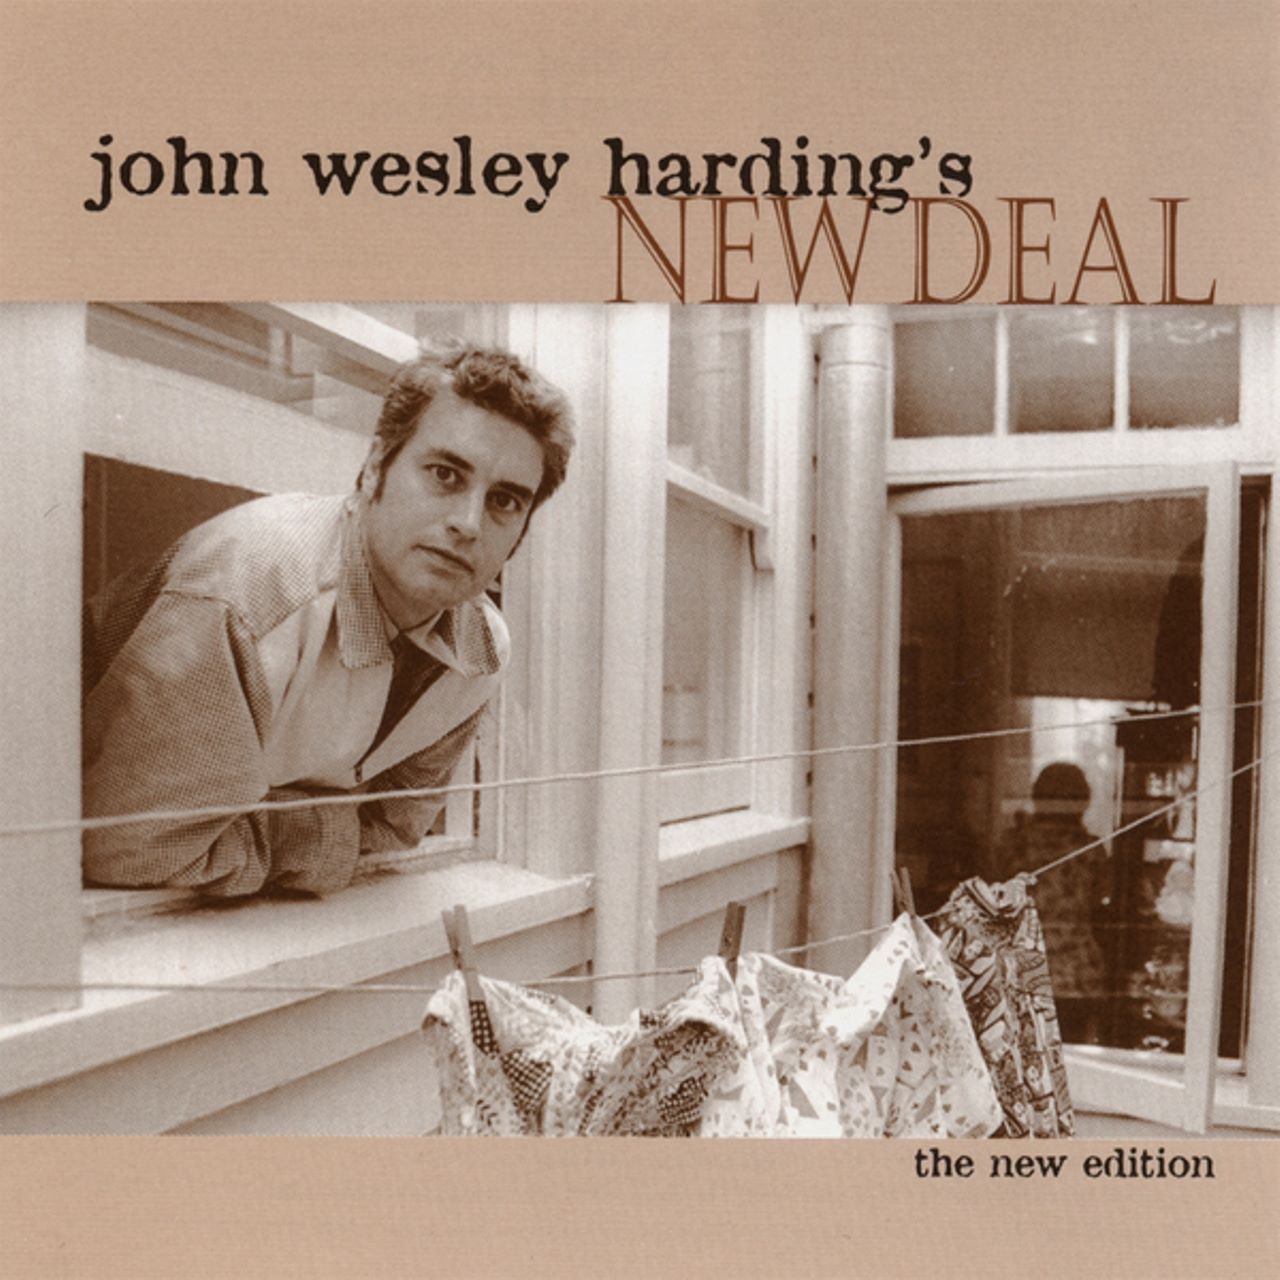 John Wesley Harding – John Wesley Harding's New Deal cover album